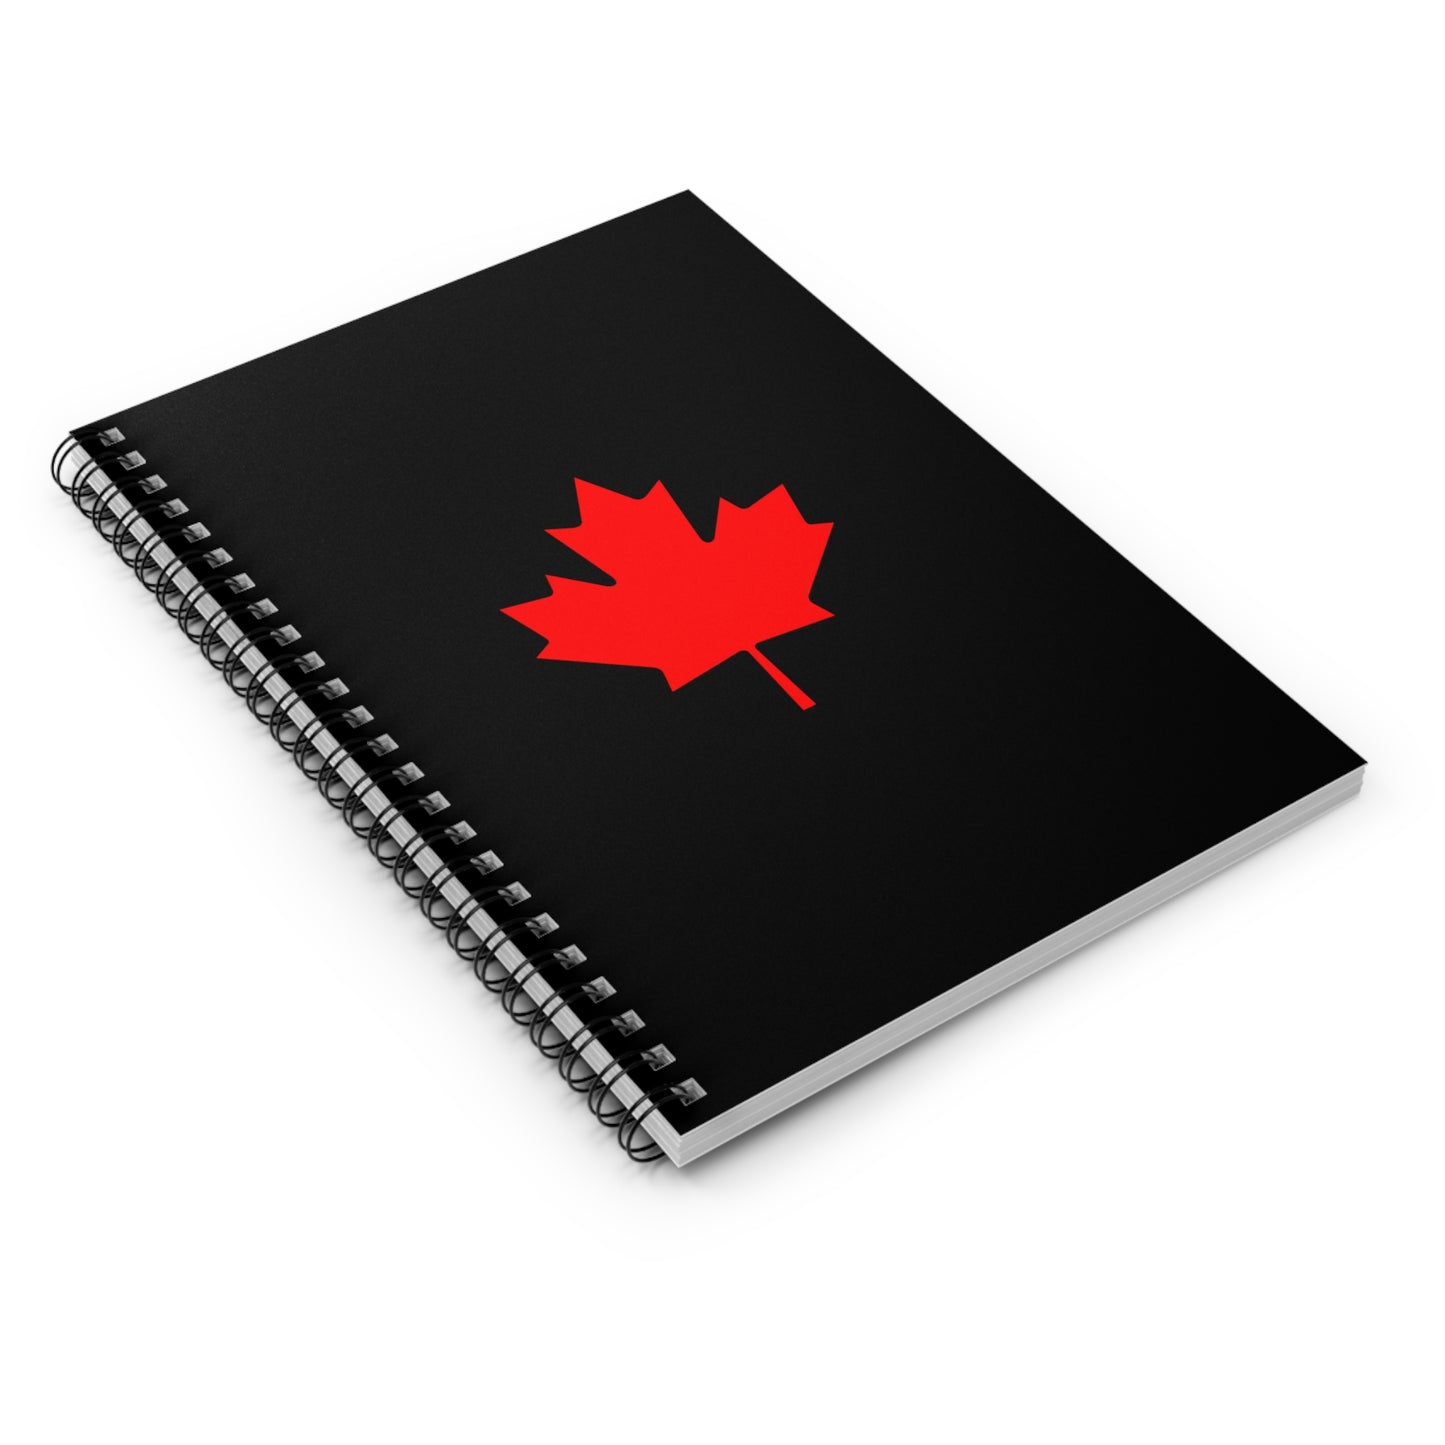 Canadian Maple Leaf, Spiral Notebook, Ruled Line, Black